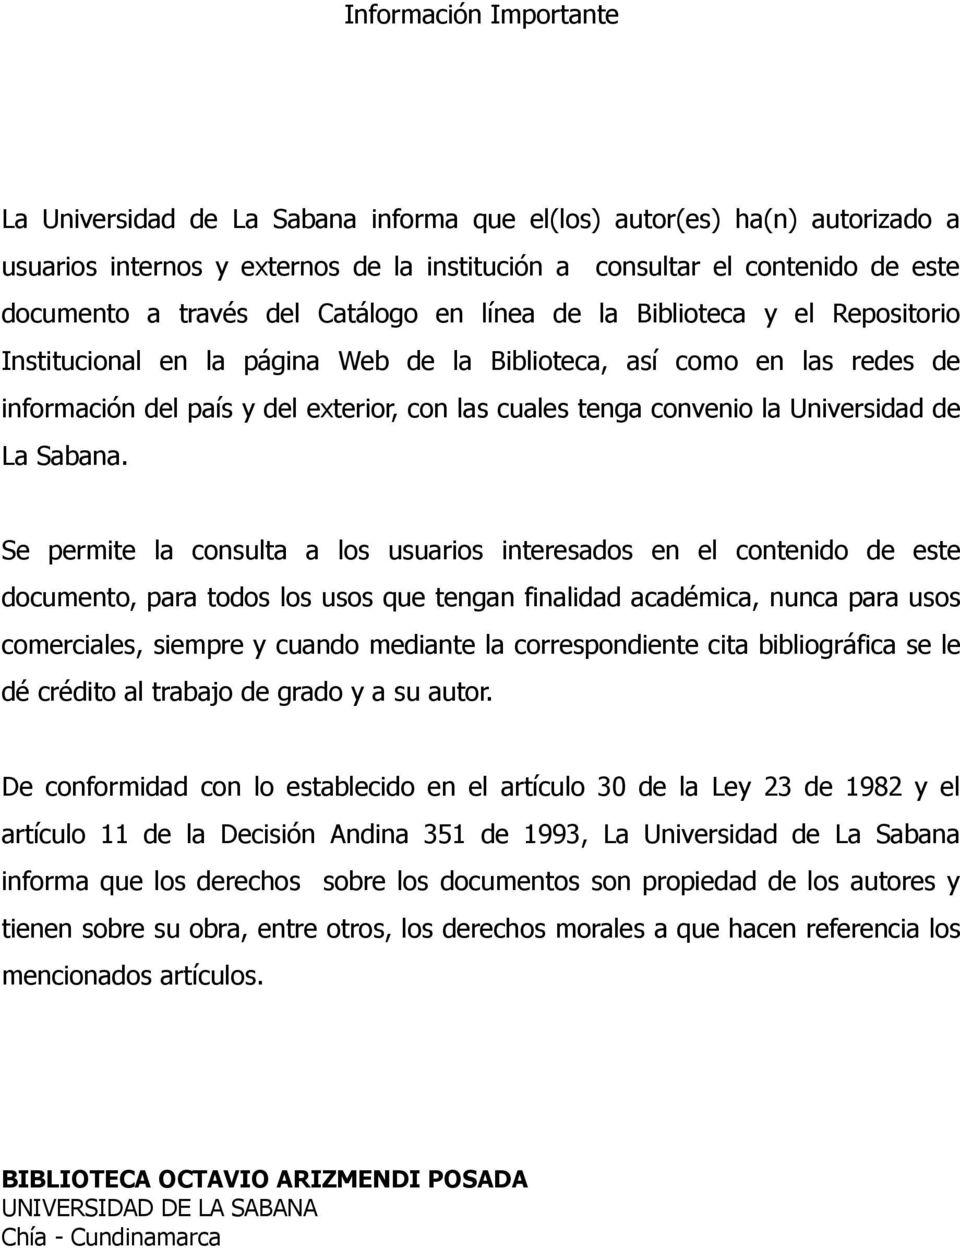 Universidad de La Sabana.